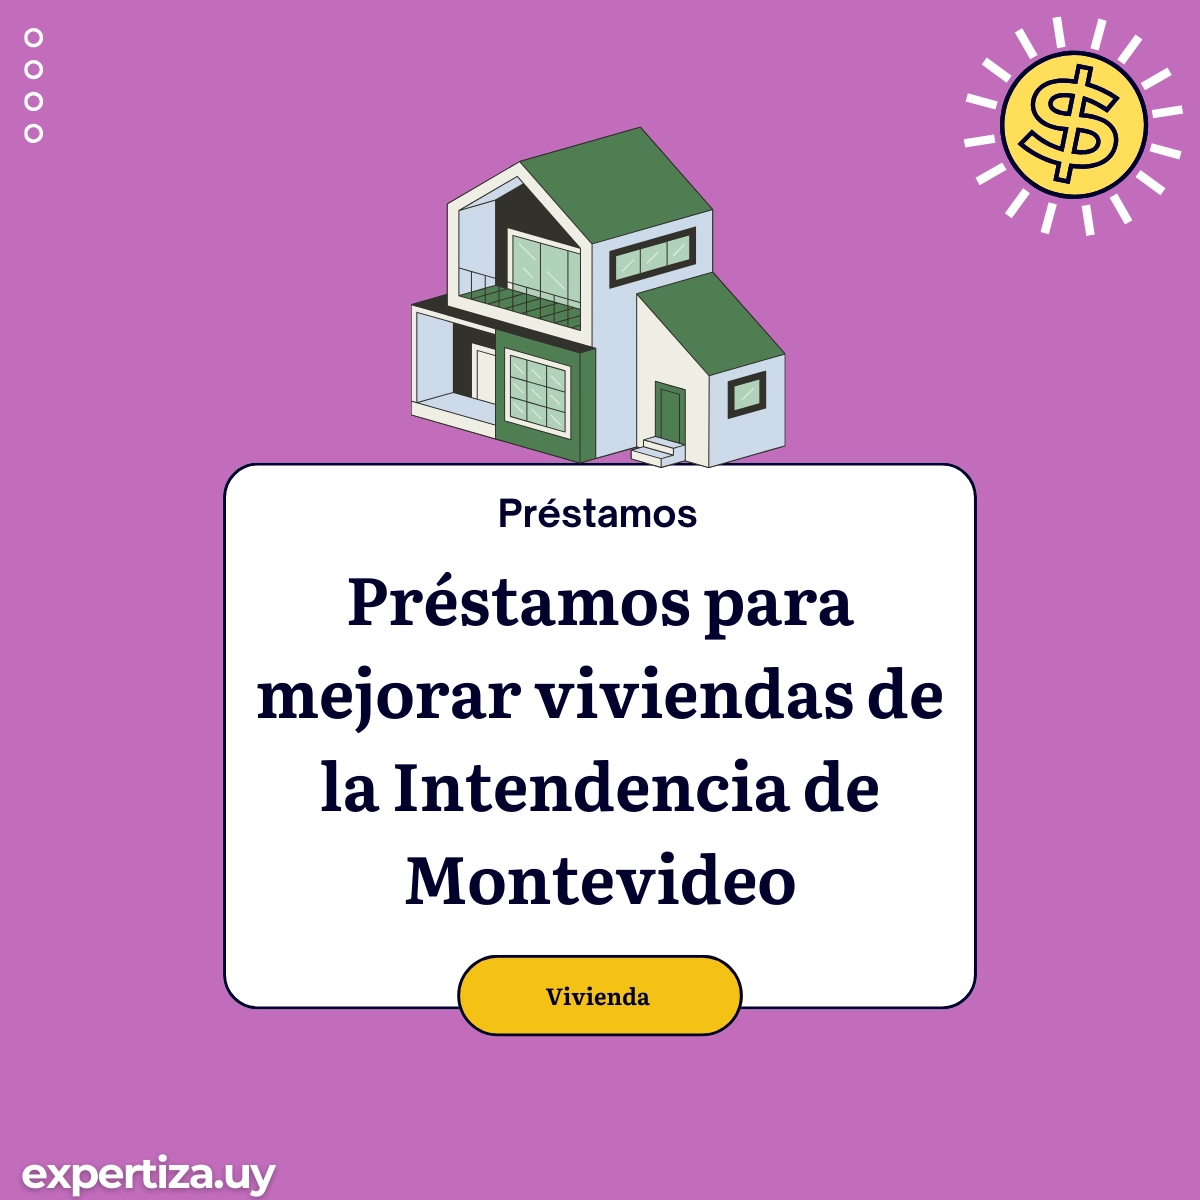 Préstamos para mejorar viviendas de la Intendencia de Montevideo.